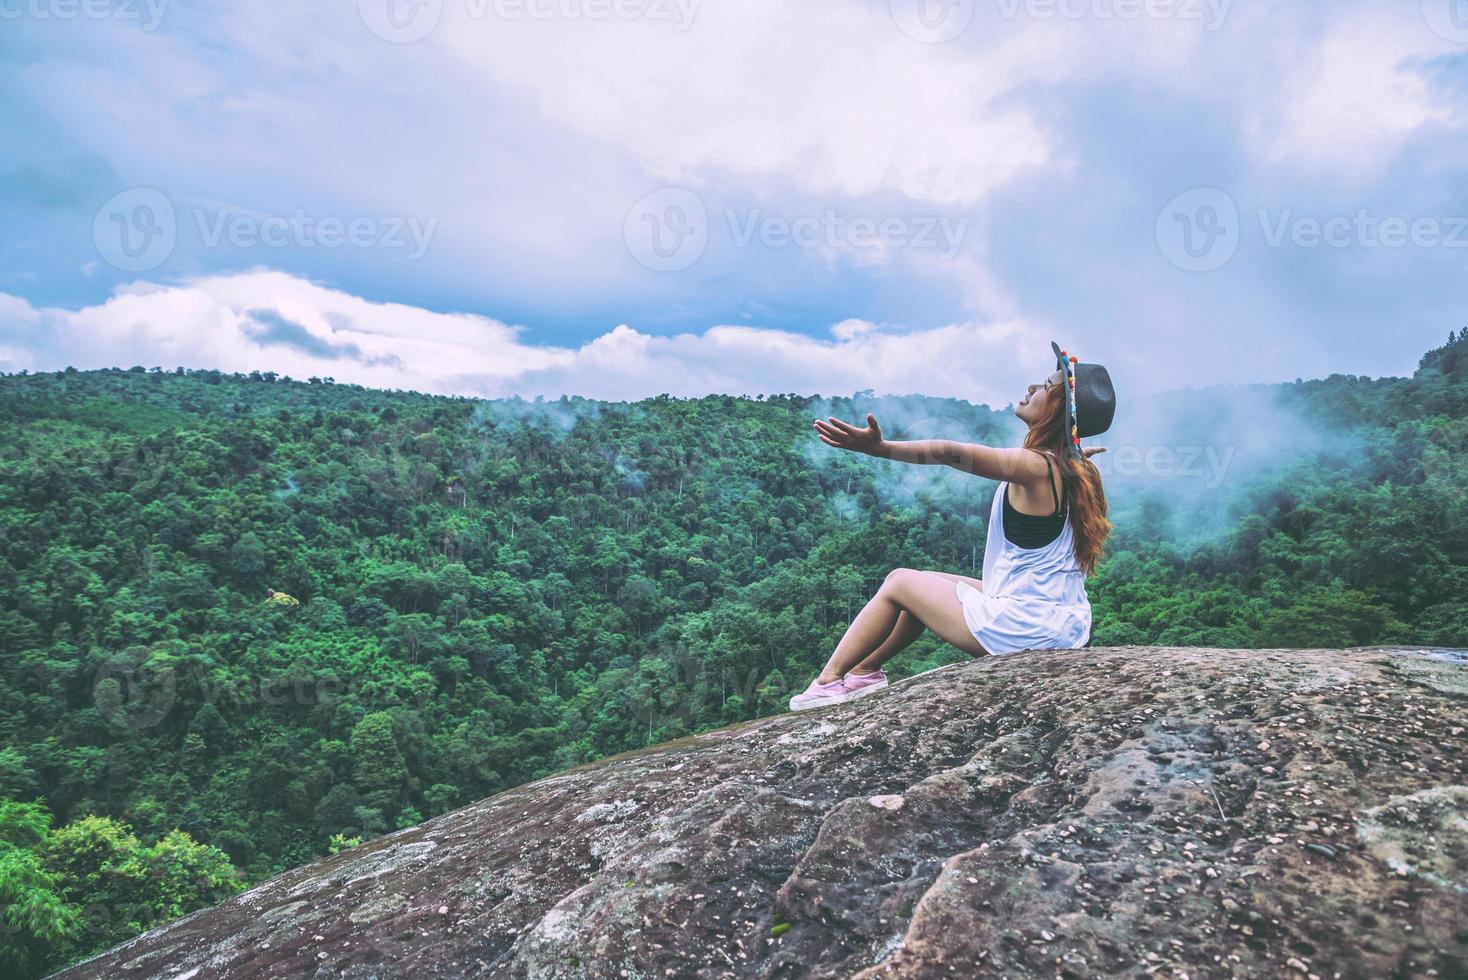 les femmes asiatiques voyagent se détendent pendant les vacances. asseyez-vous sur une falaise rocheuse. bois de nature sauvage sur la montagne. photo